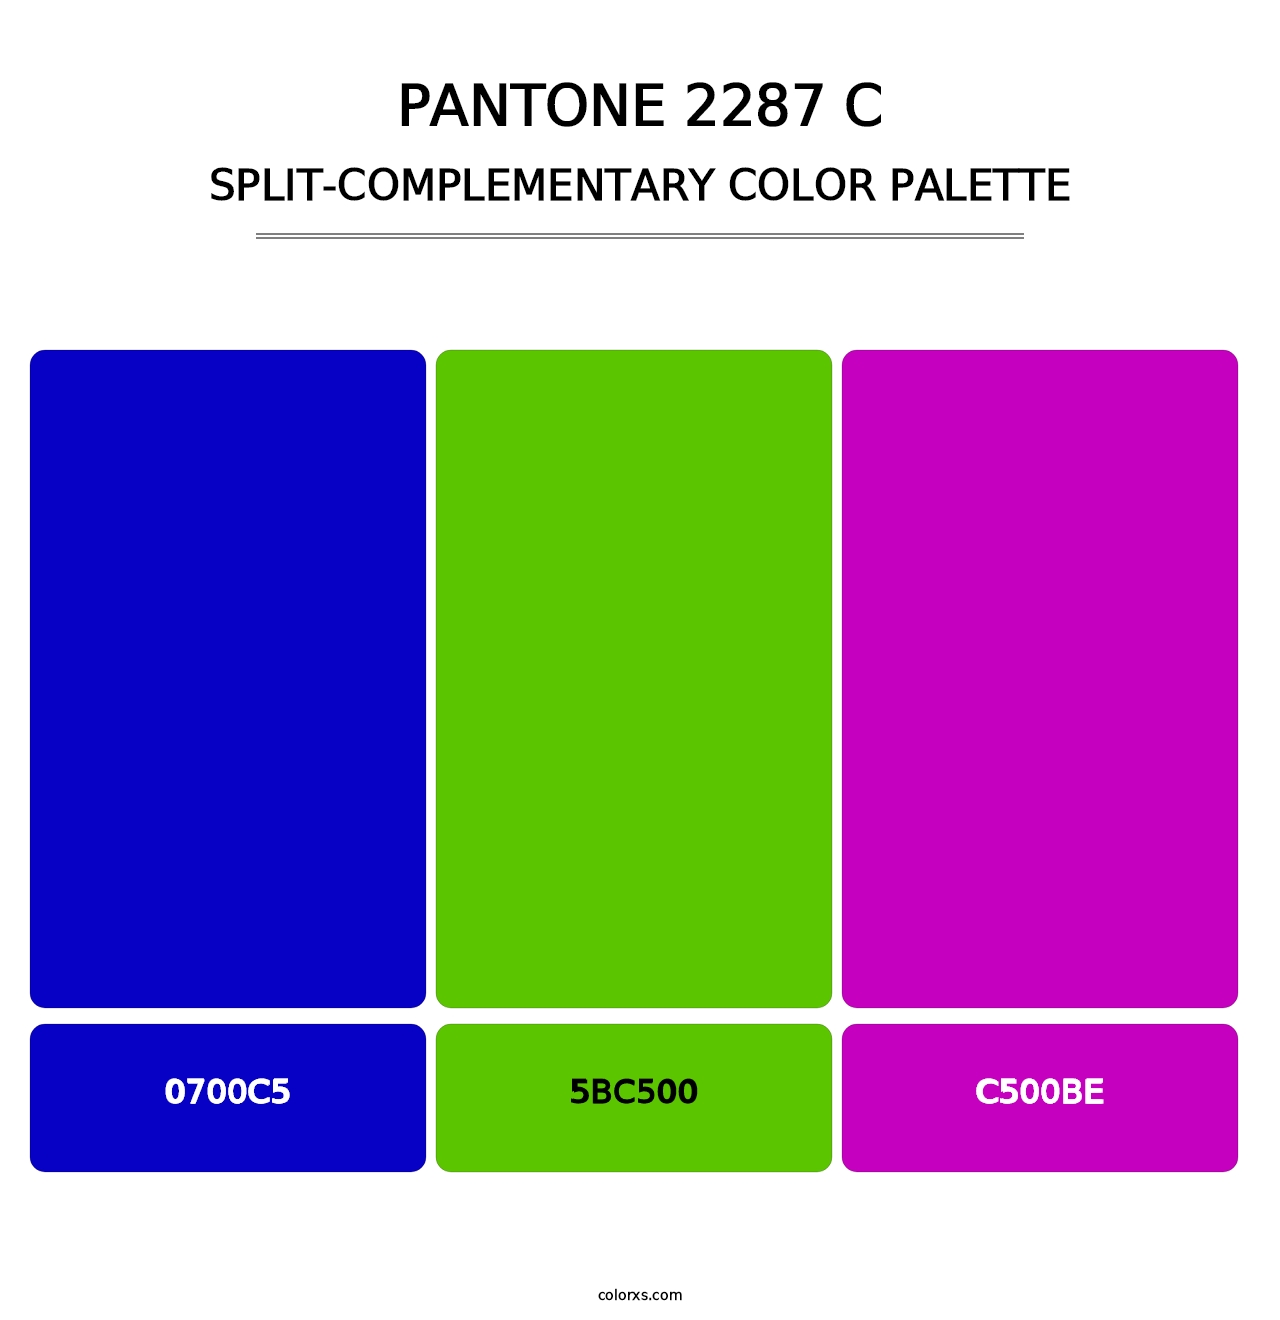 PANTONE 2287 C - Split-Complementary Color Palette